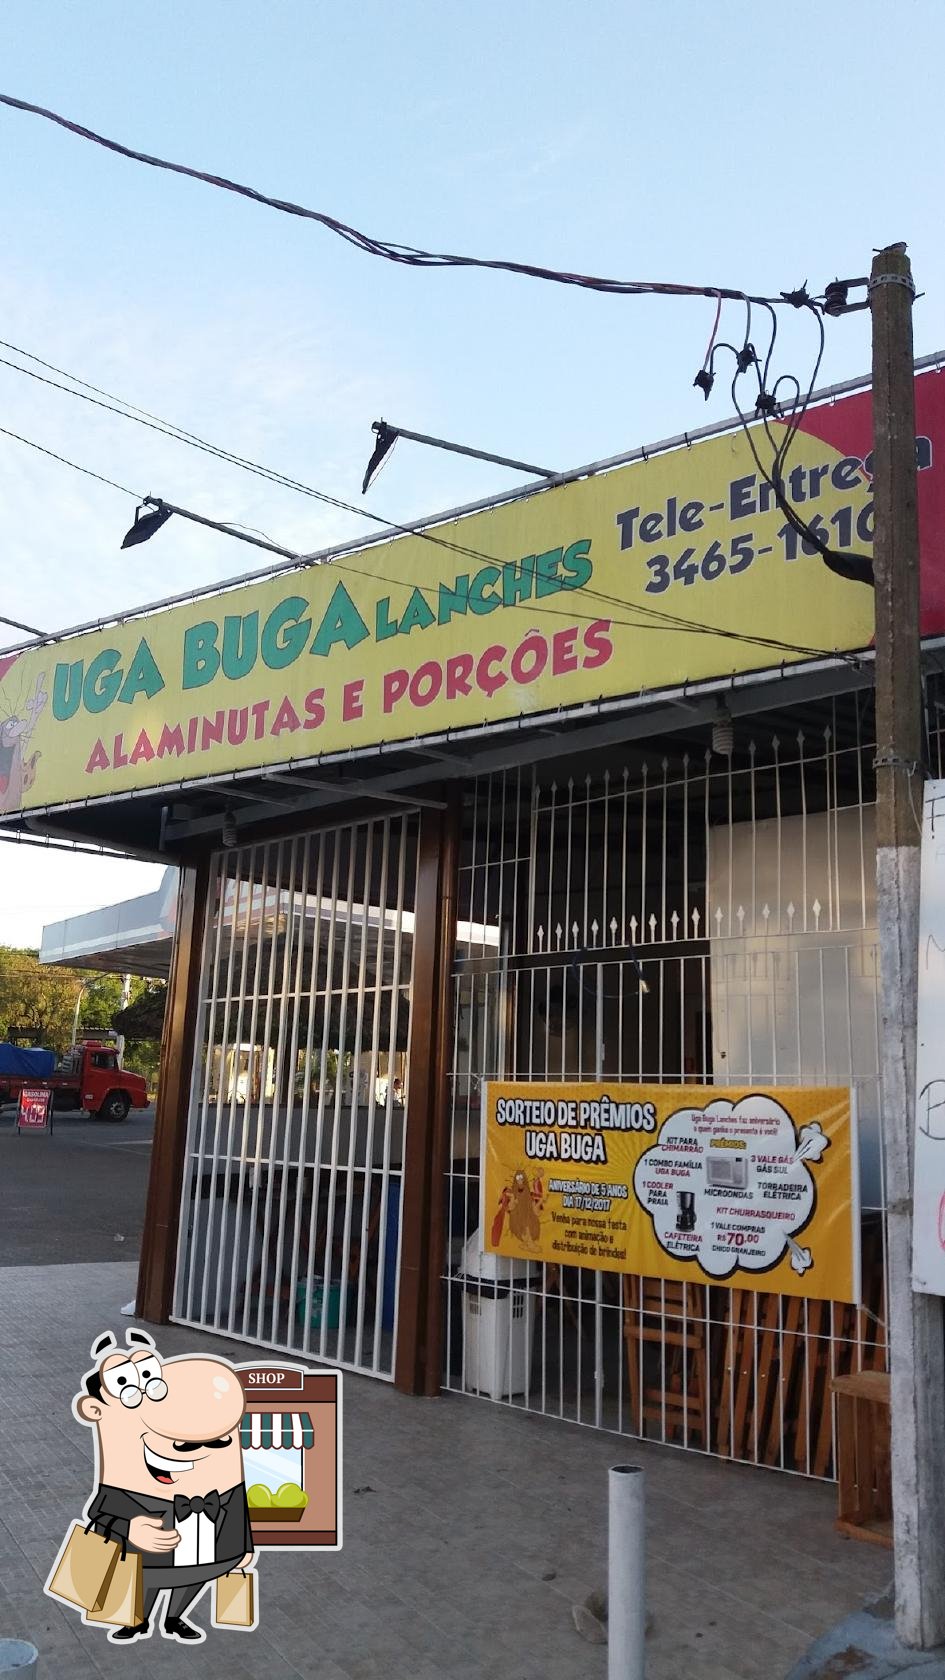 UGA BUGA LANCHES pub & Bar, Canoas, R. República - Avaliações de  restaurantes